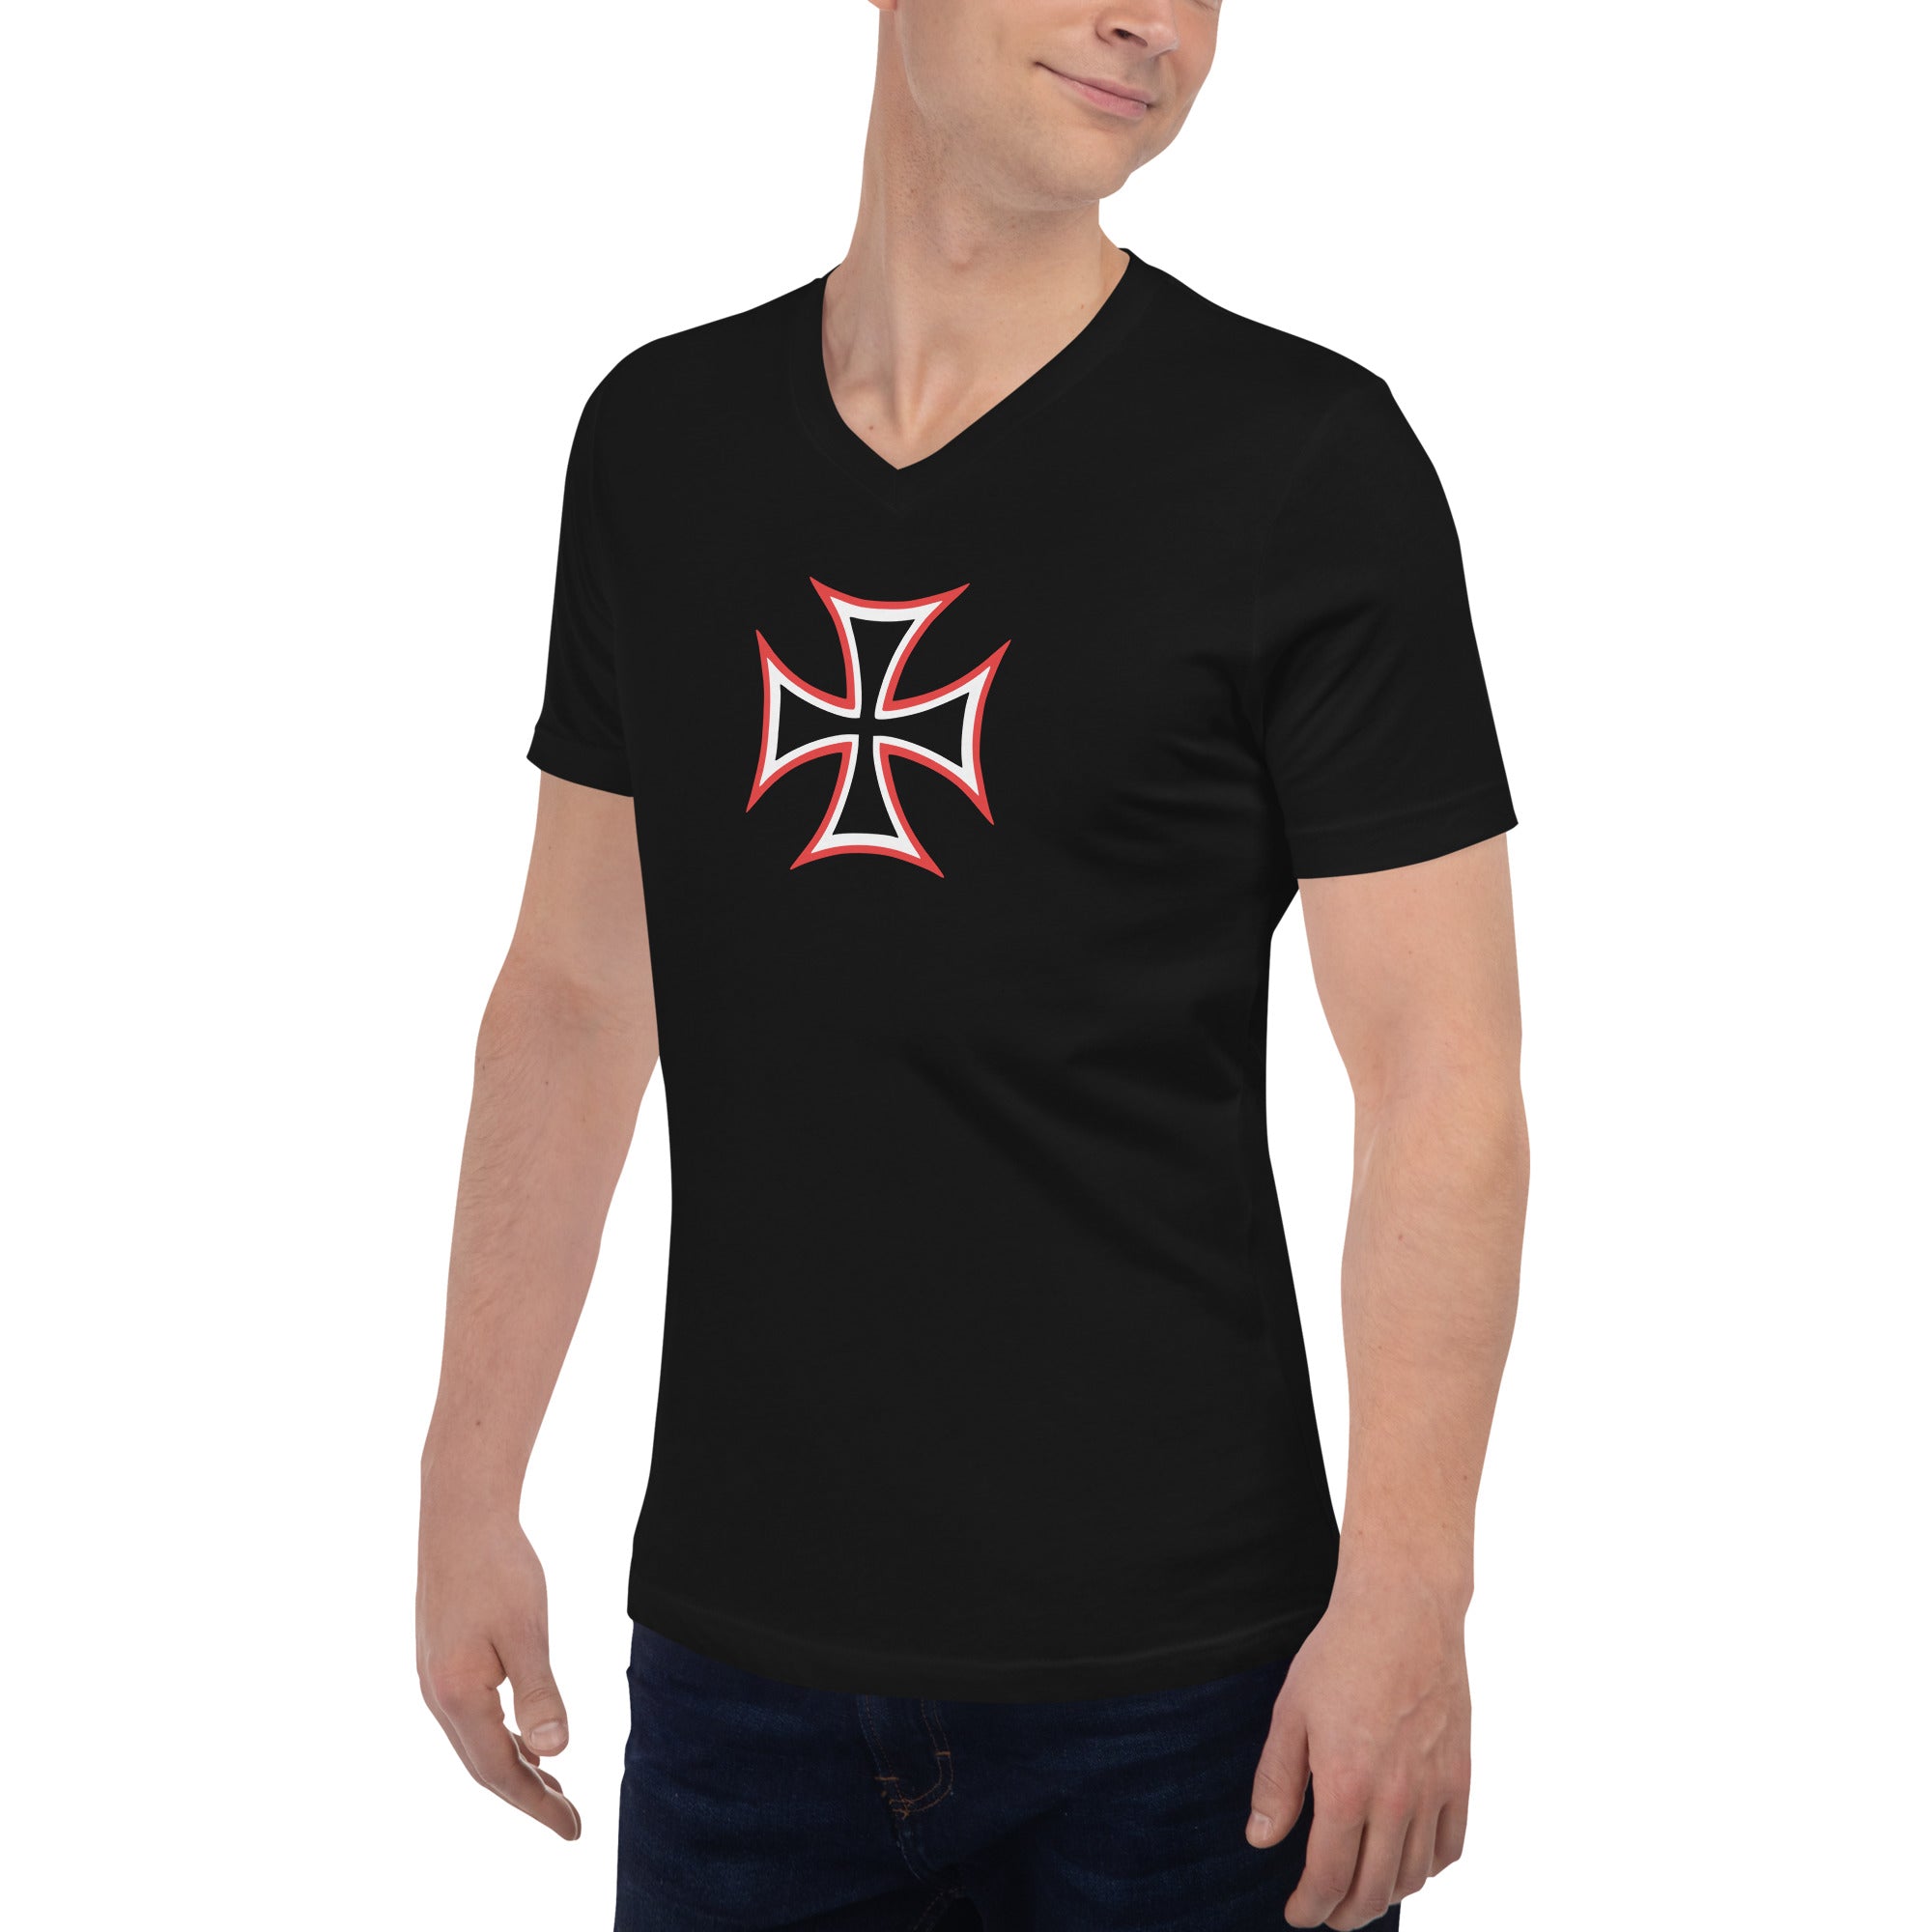 Red and White Occult Biker Cross Symbol Short Sleeve V-Neck T-Shirt